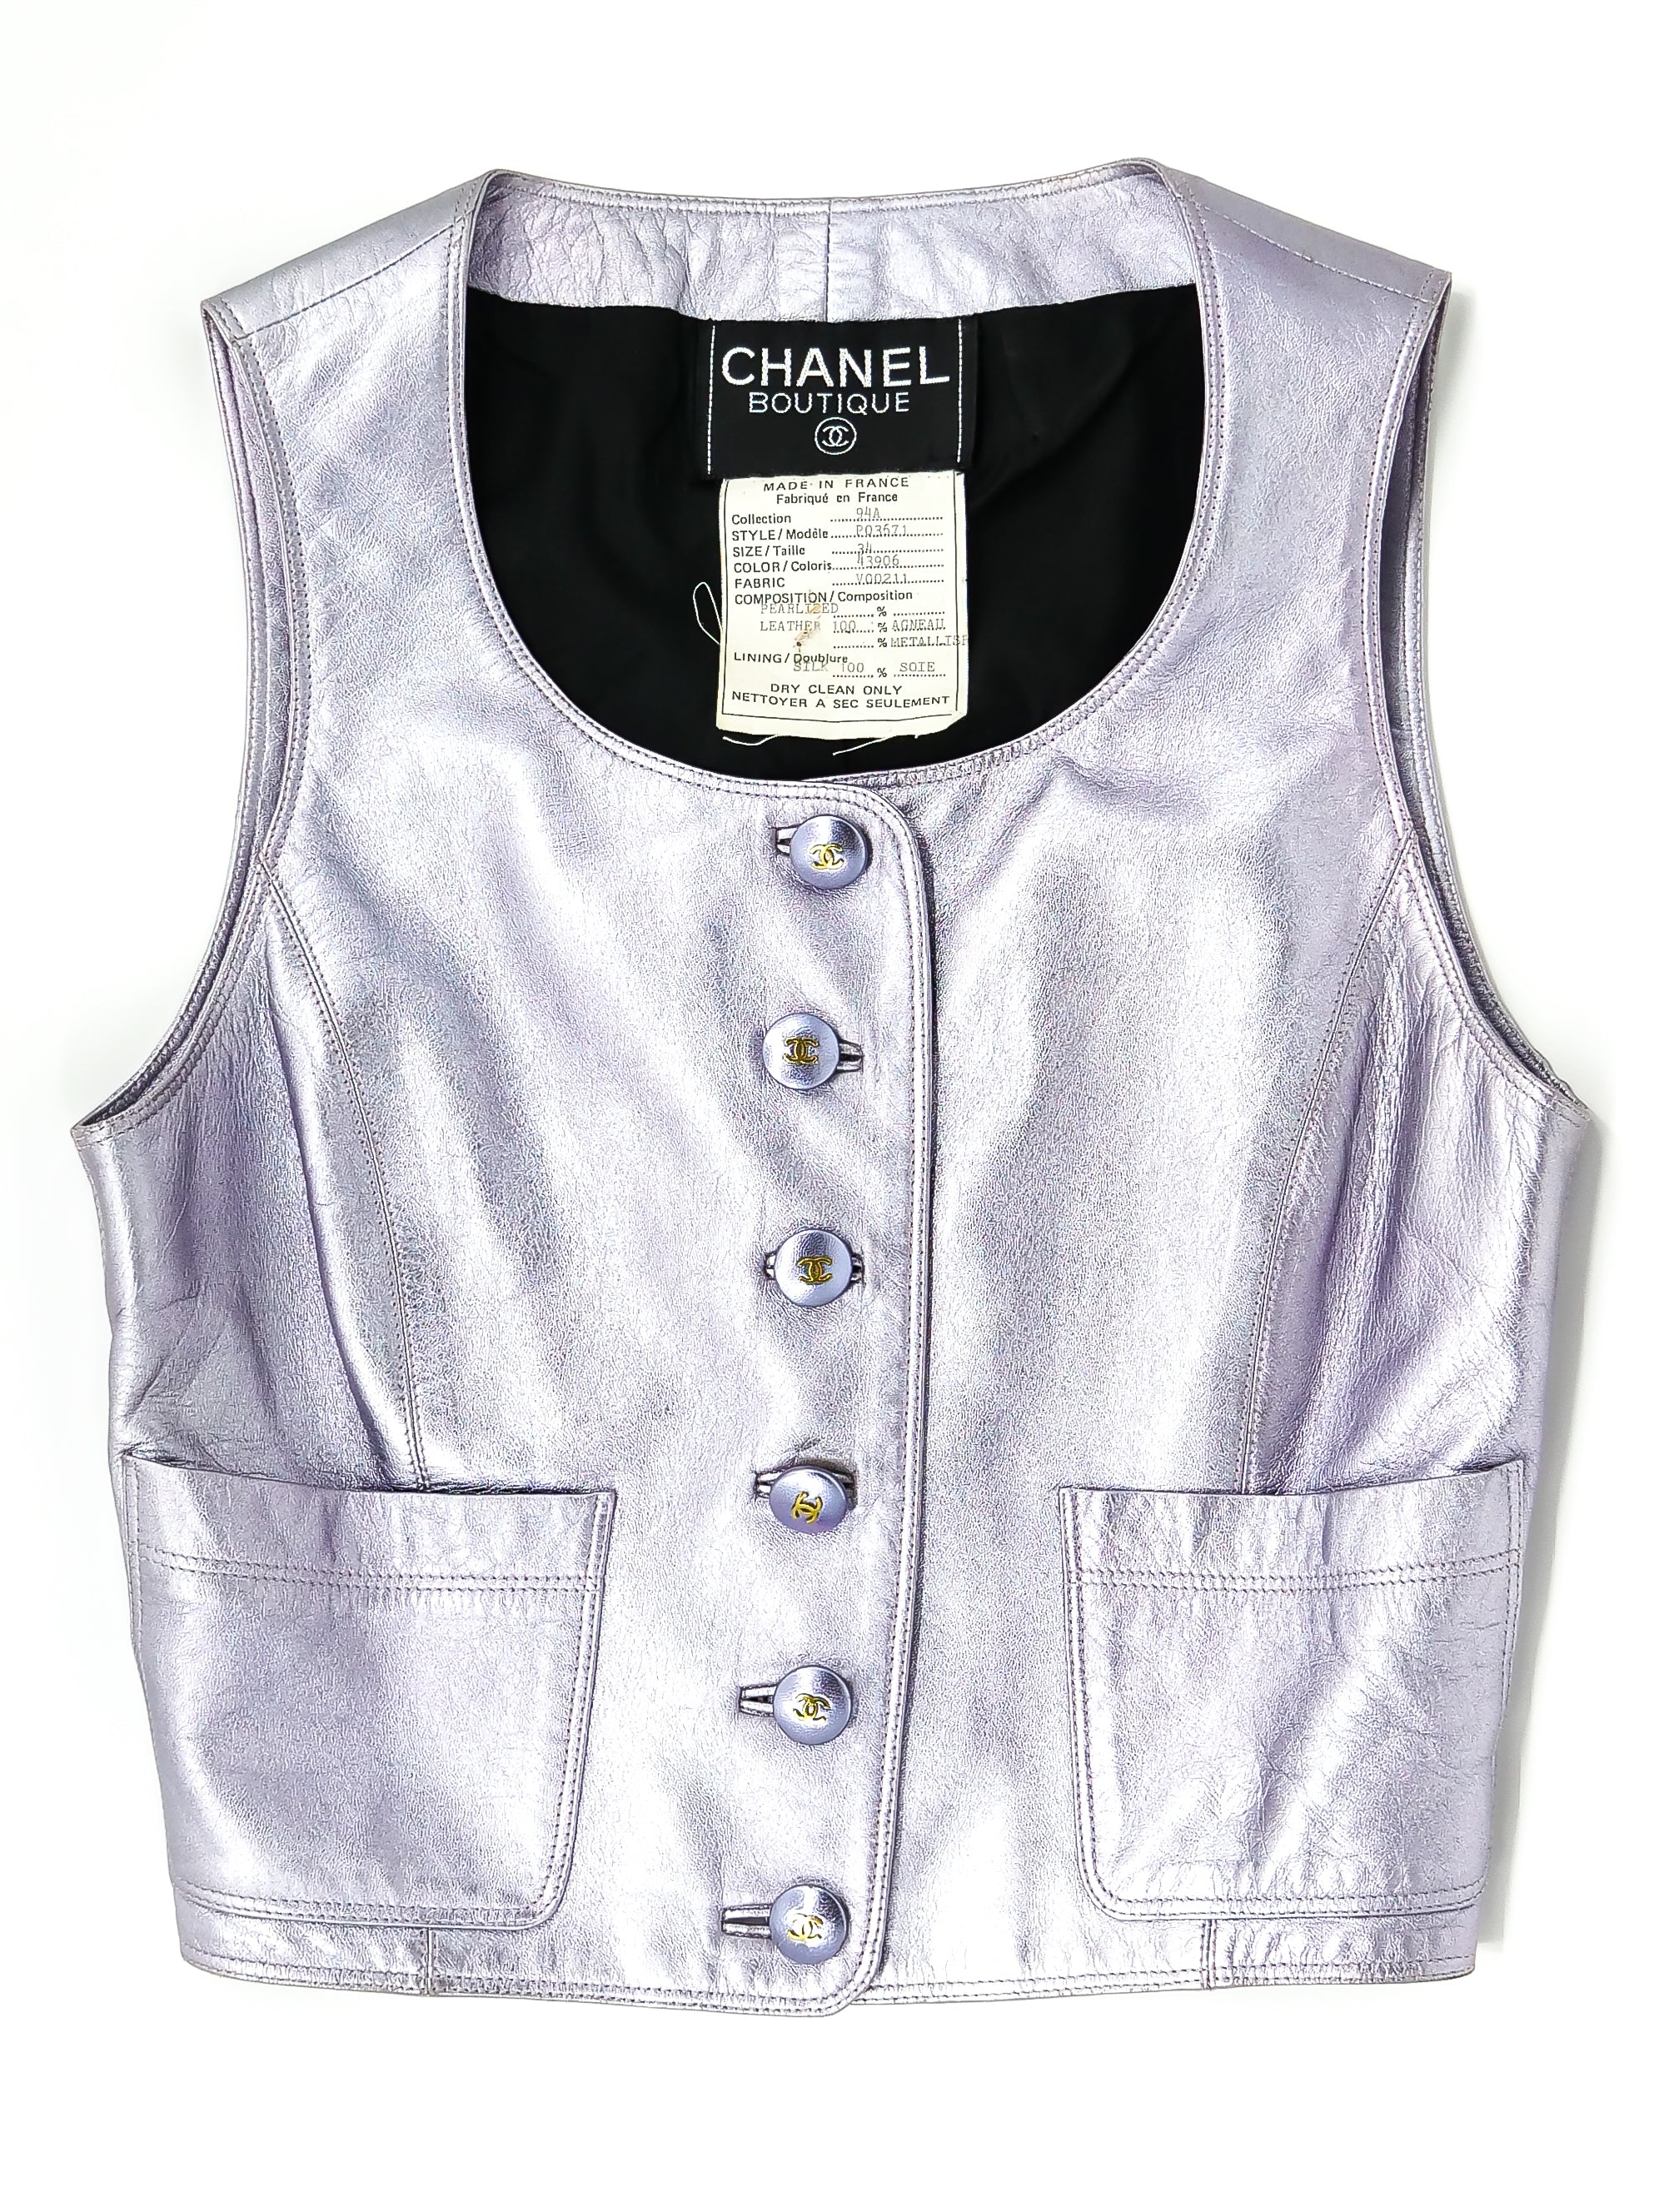 Chanel 01P Fantasy Tweed Vest / Top Zip Front High Neck 42 fits 6 to 8